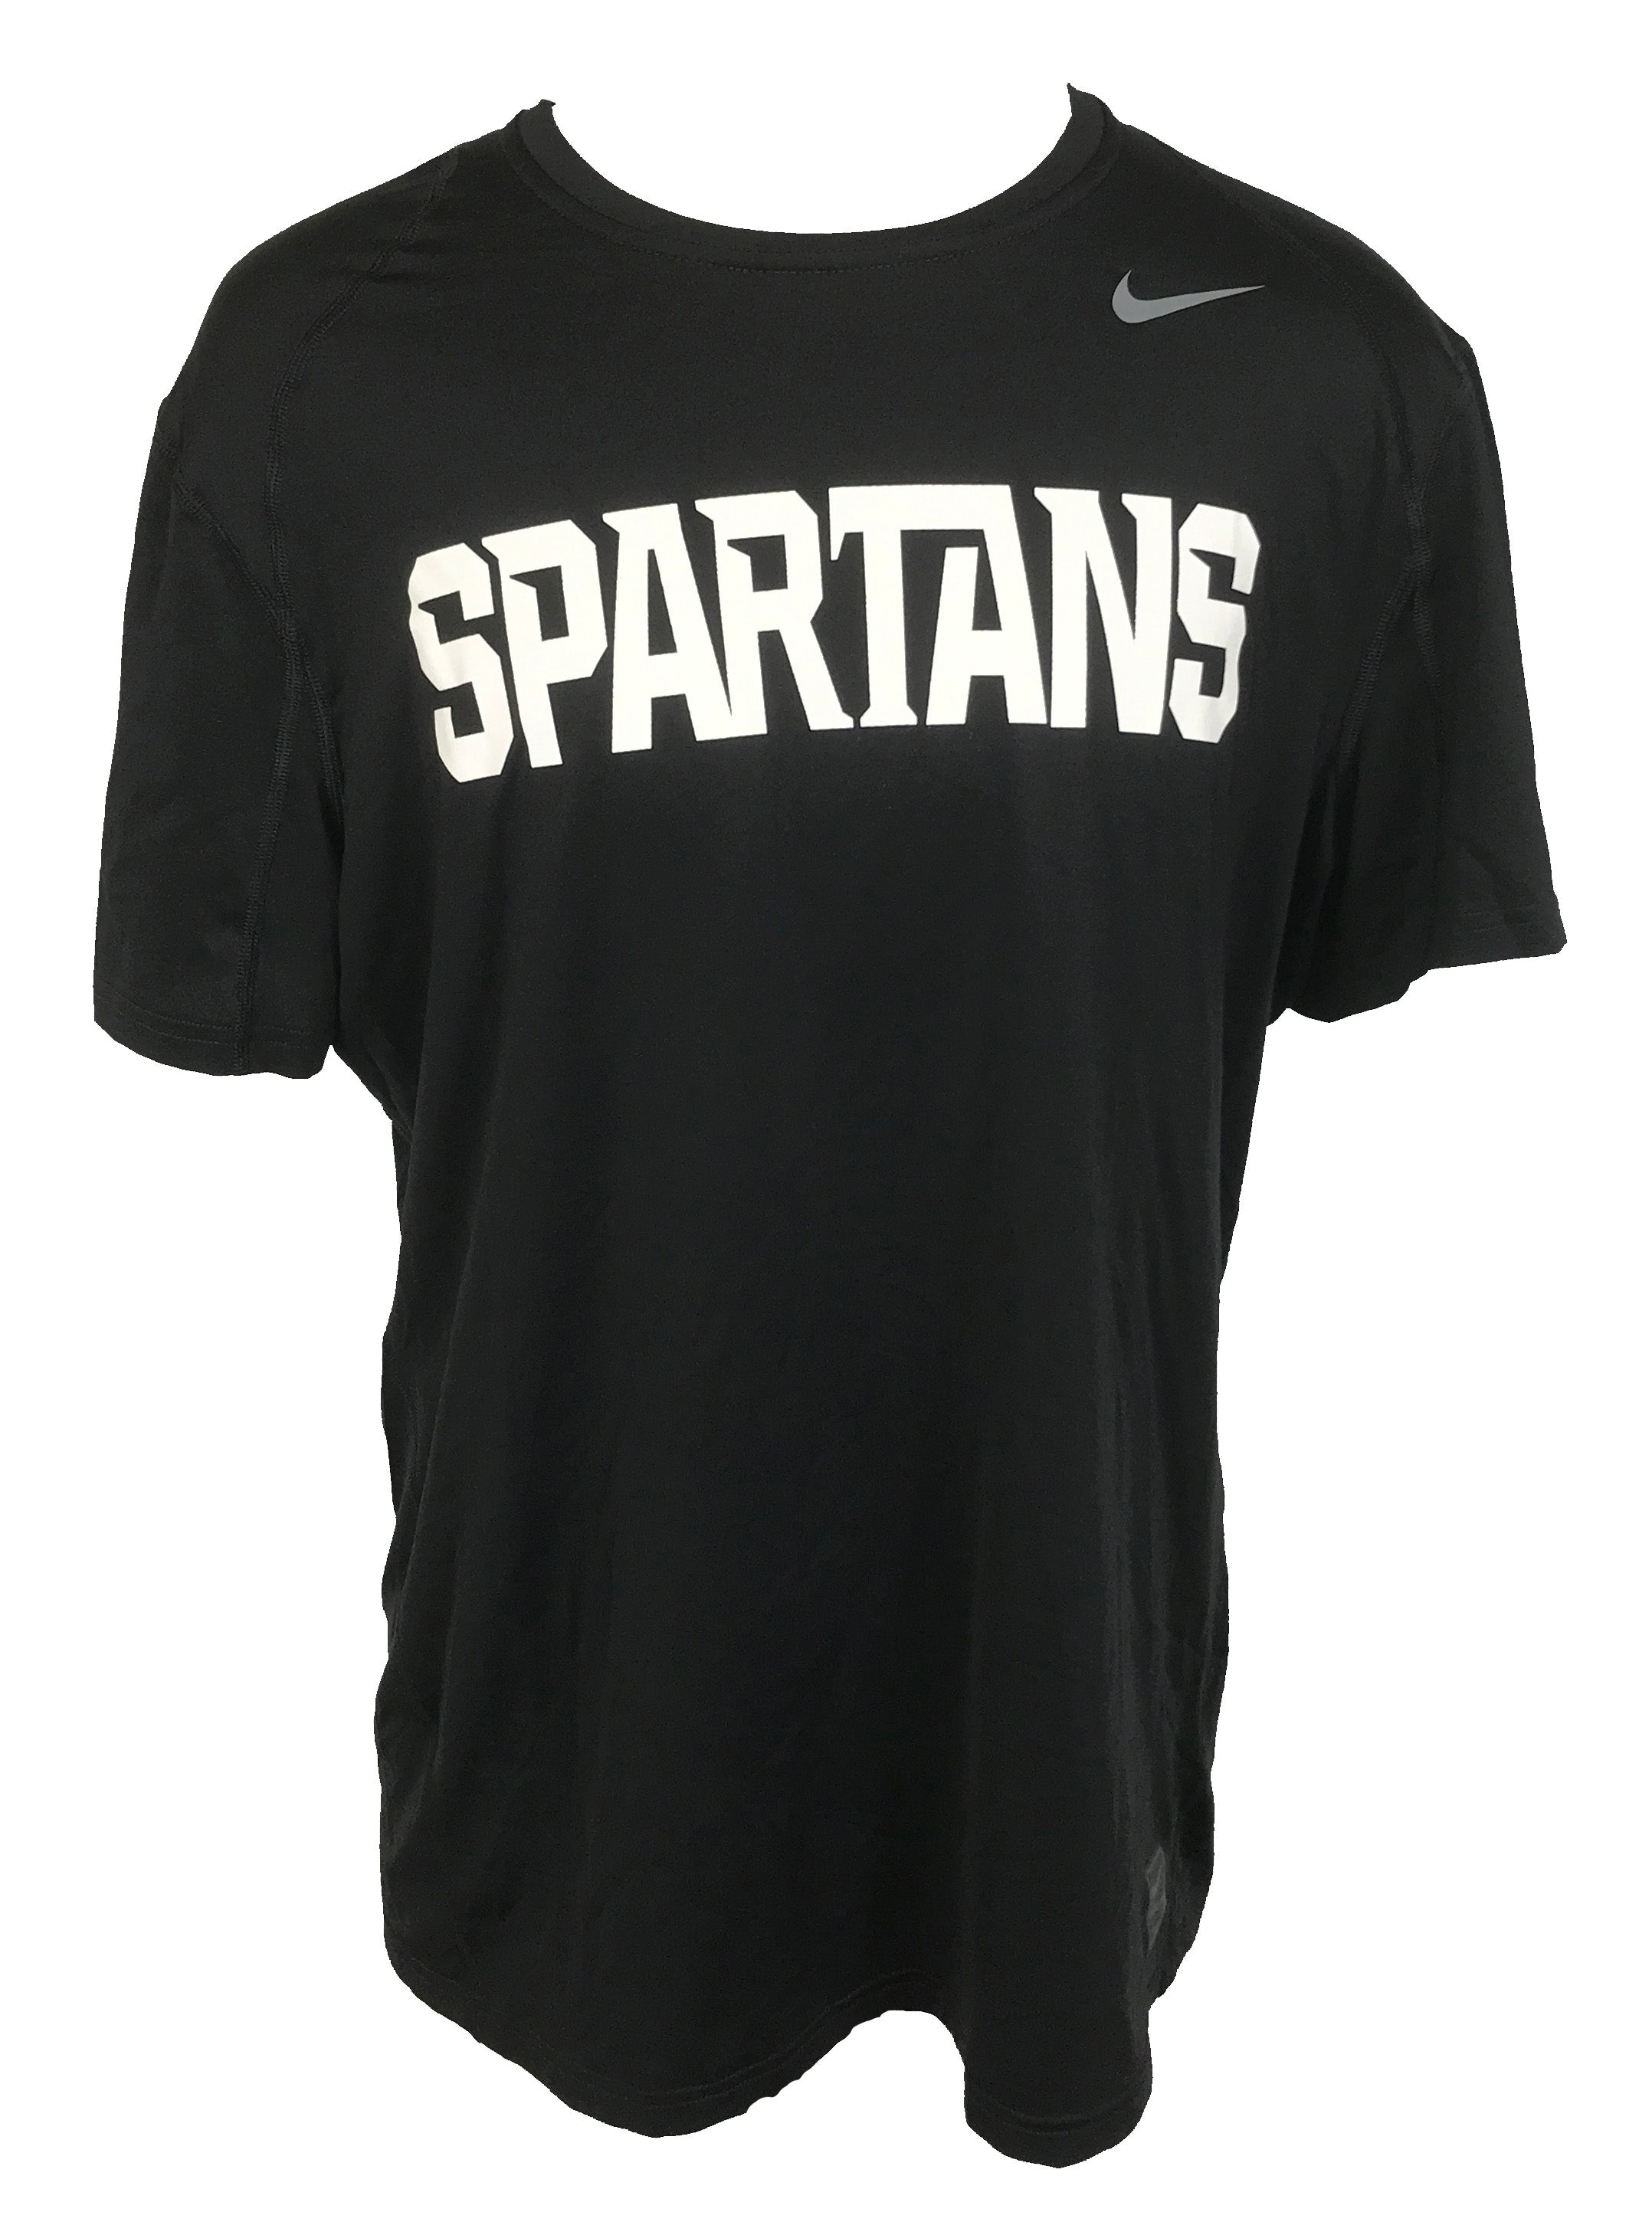 Nike Black Spartans Dri-Fit T-Shirt Women's L